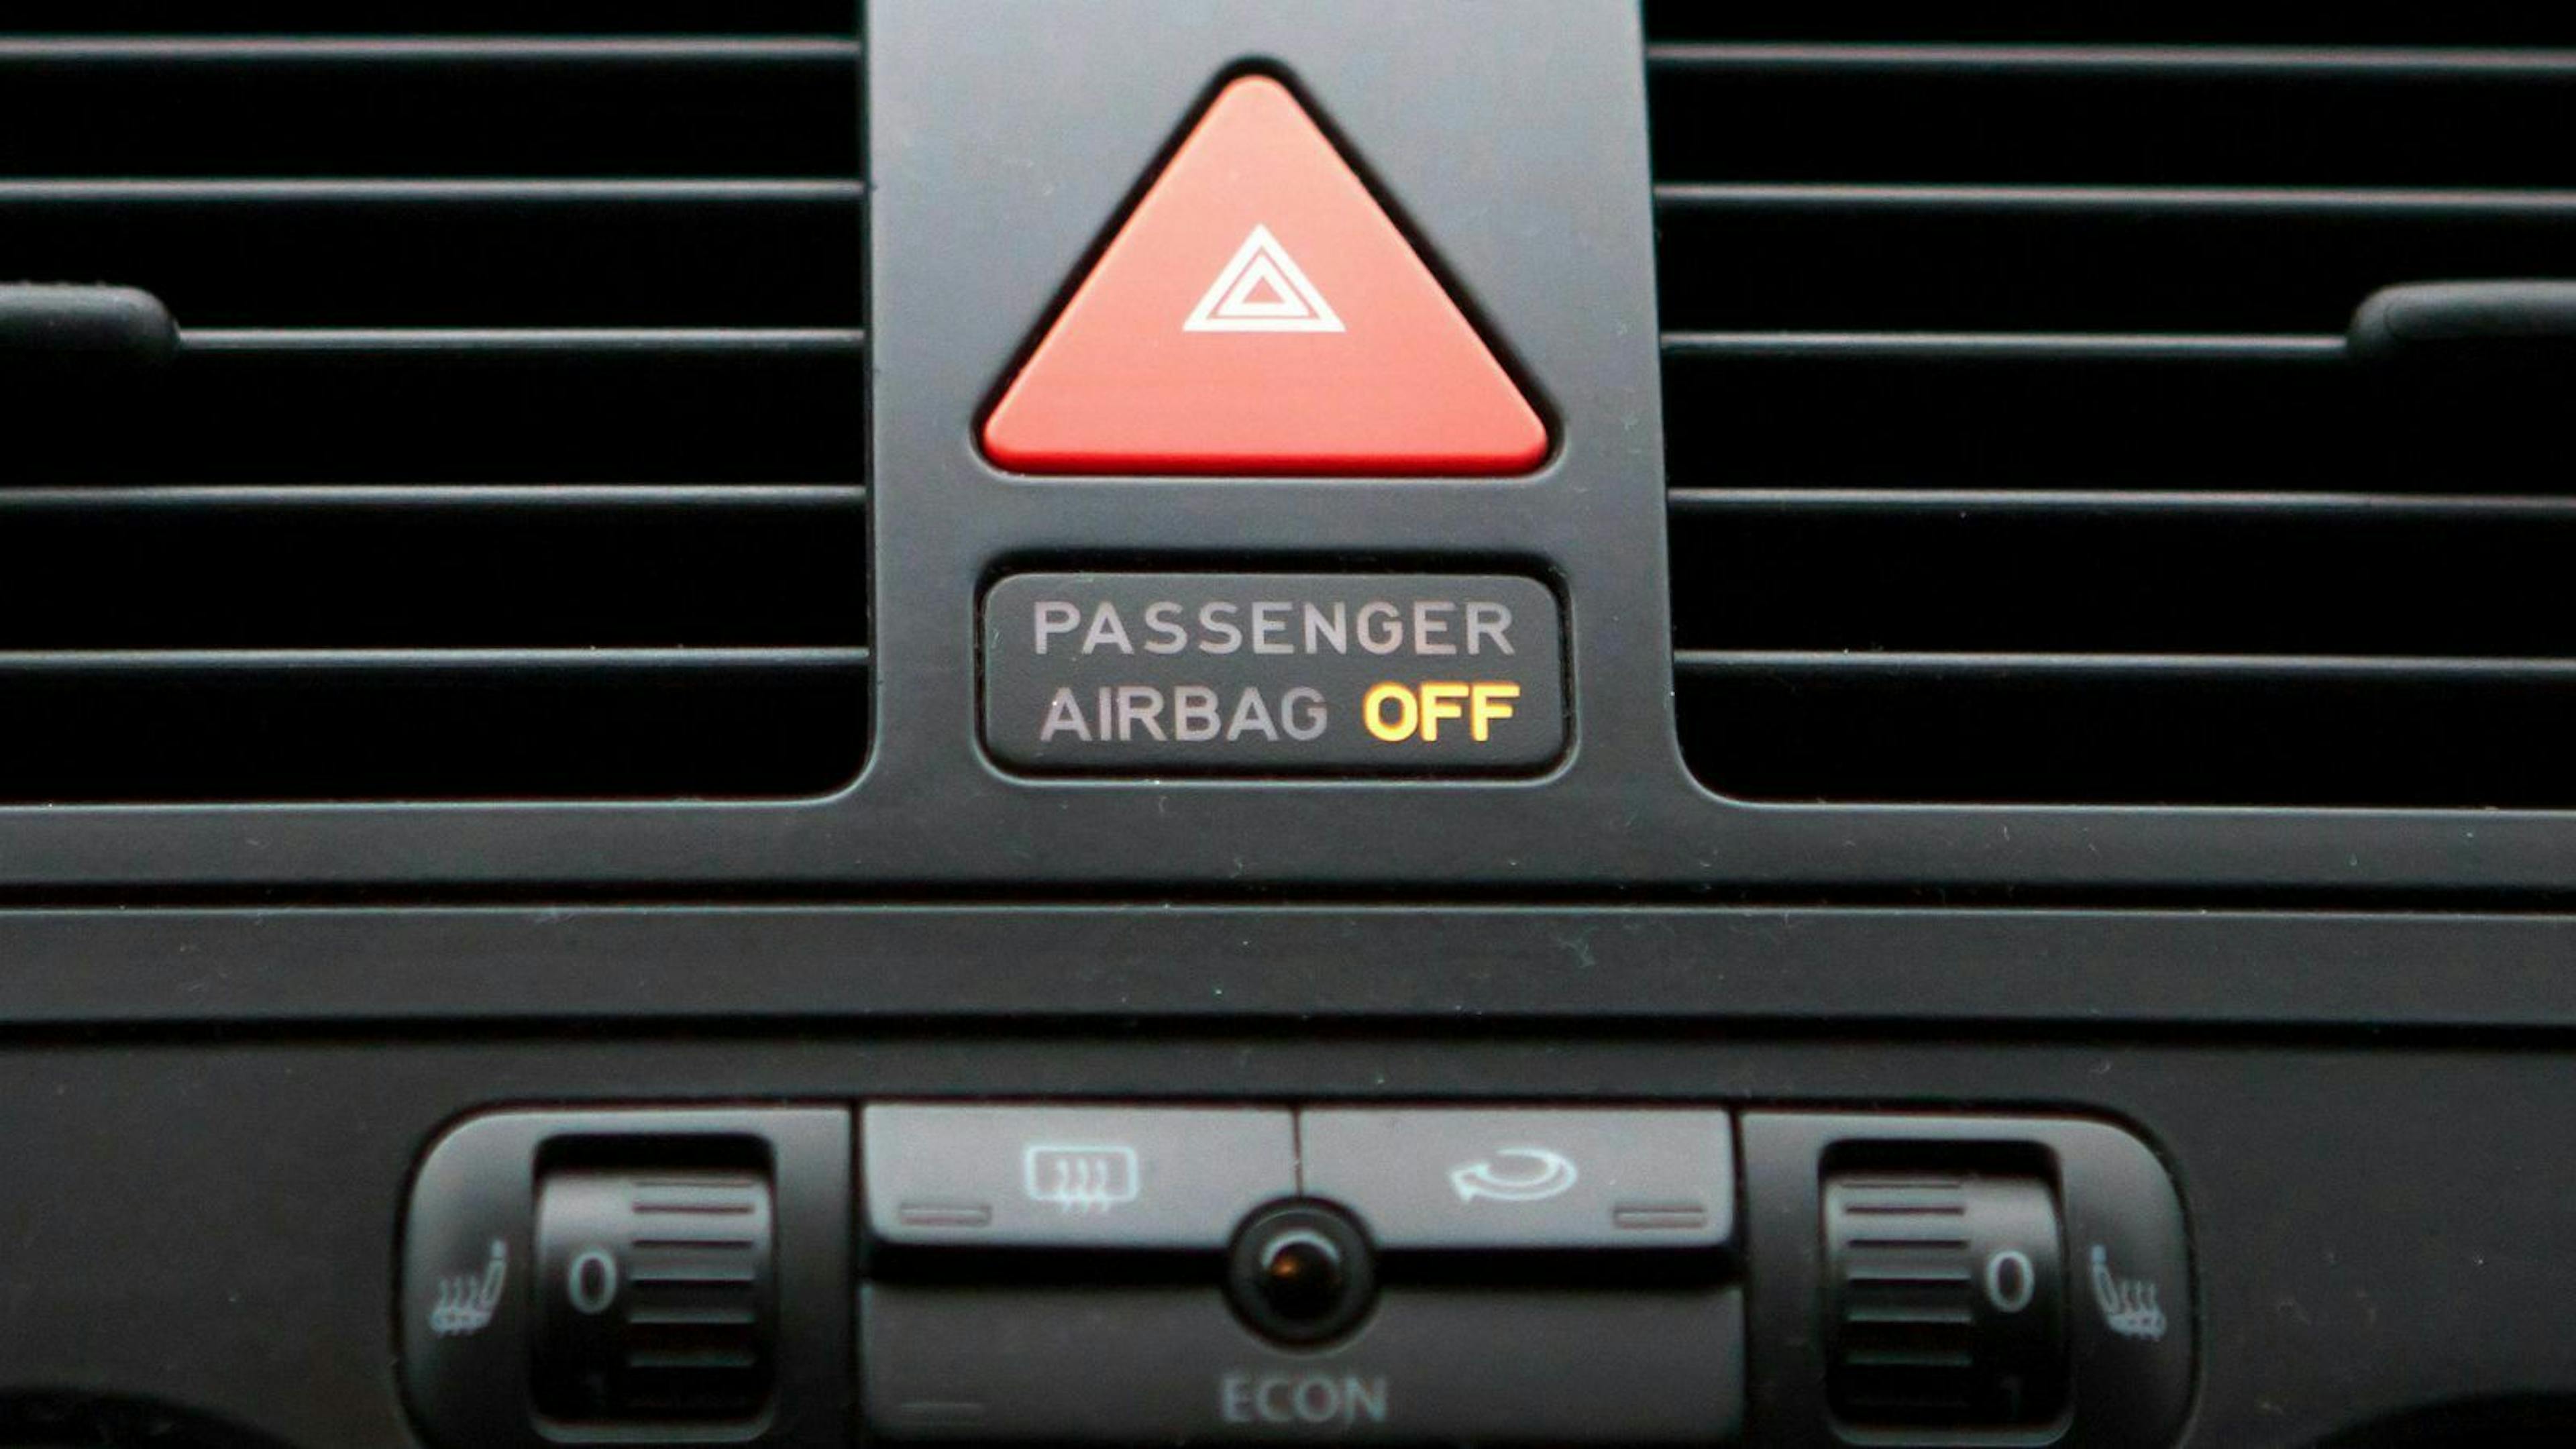 Befestigst Du die Babyschale auf dem Beifahrersitz, muss der Airbag am Beifahrersitz ausgeschaltet sein.